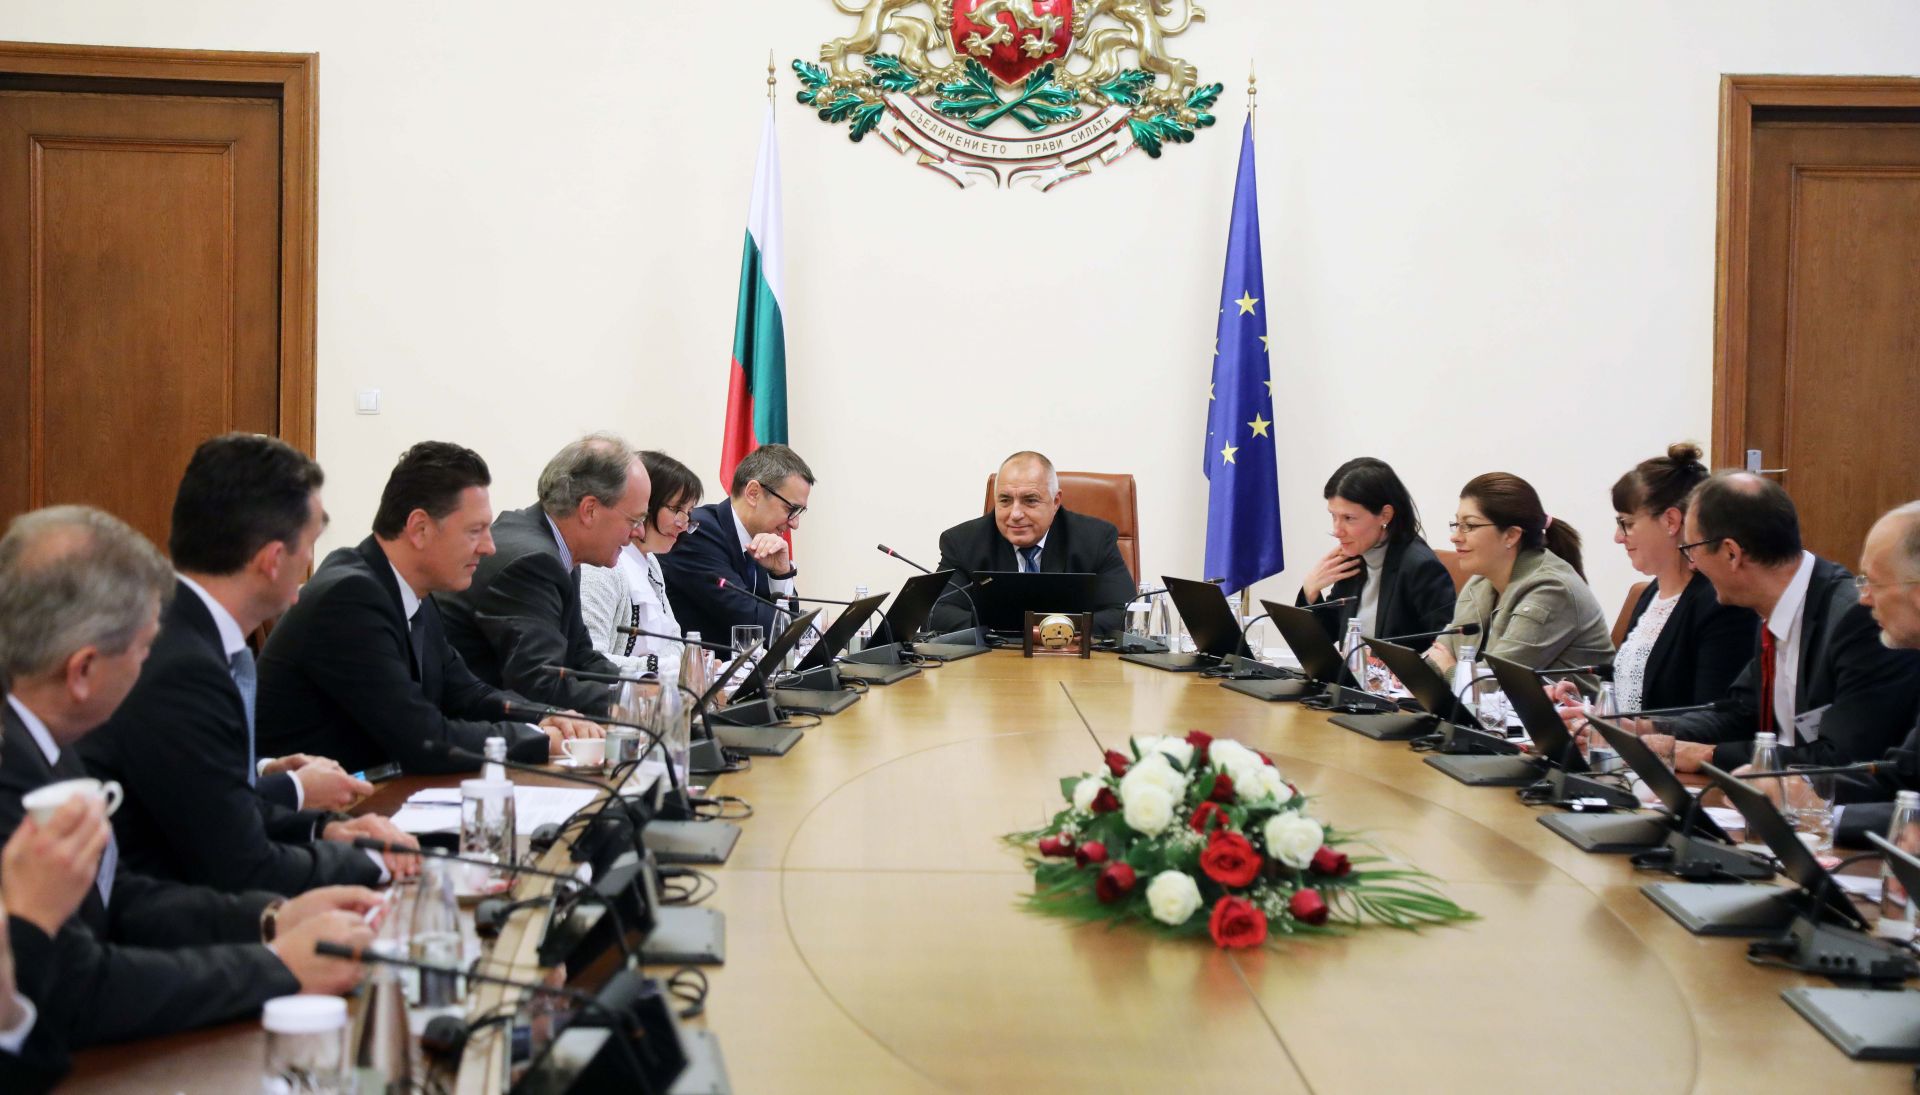 Бойко Борисов на среща с представители на Германо-Българска индустриално-търговска камара (ГБИТК) в България, 19 декември 2019 г.